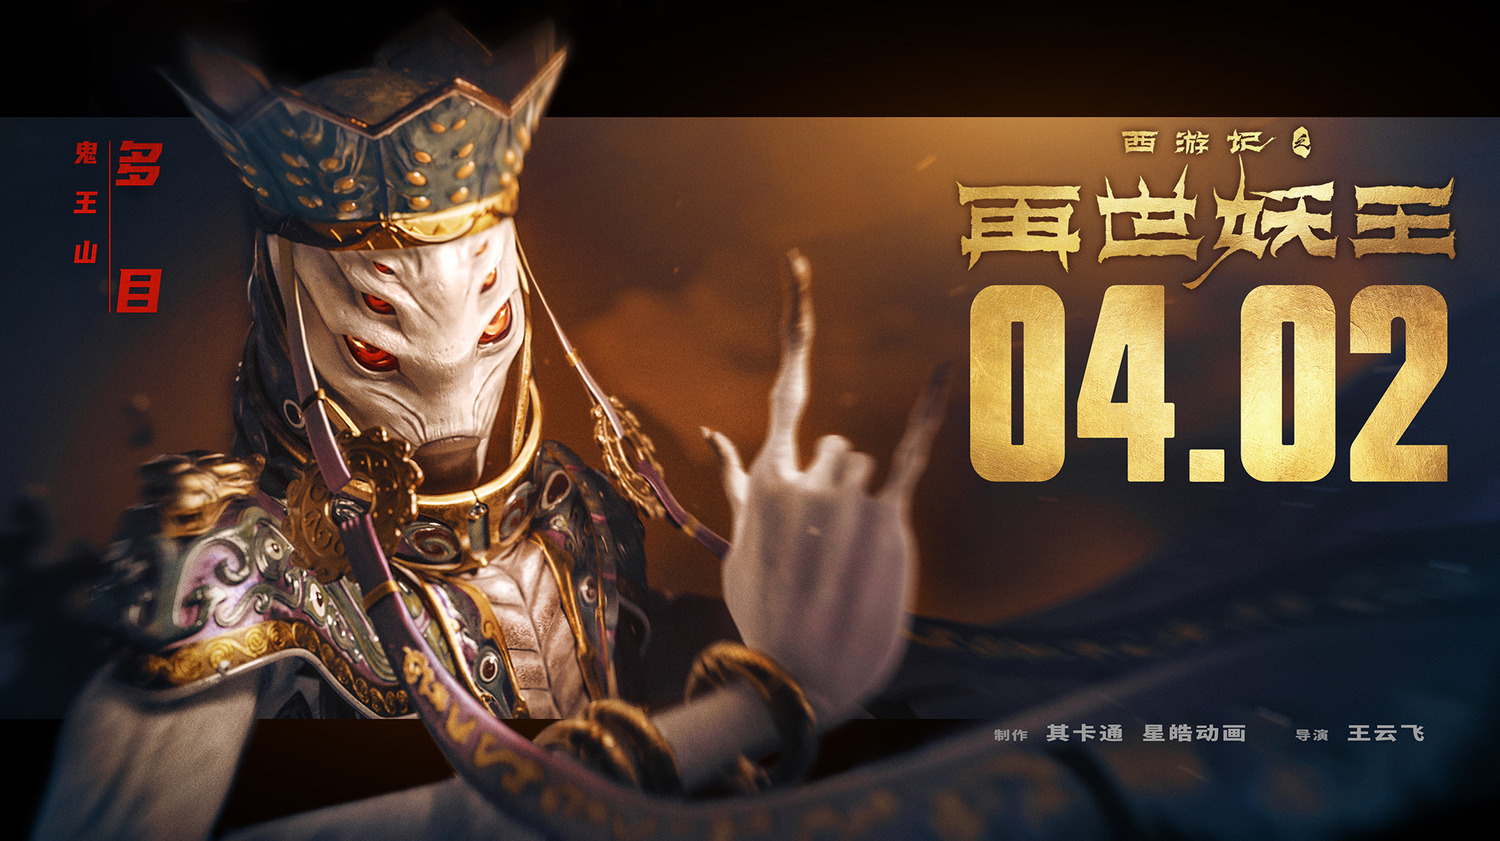 Extra Large Movie Poster Image for Xi You Ji Zhi Zai Shi Yao Wang (#4 of 21)